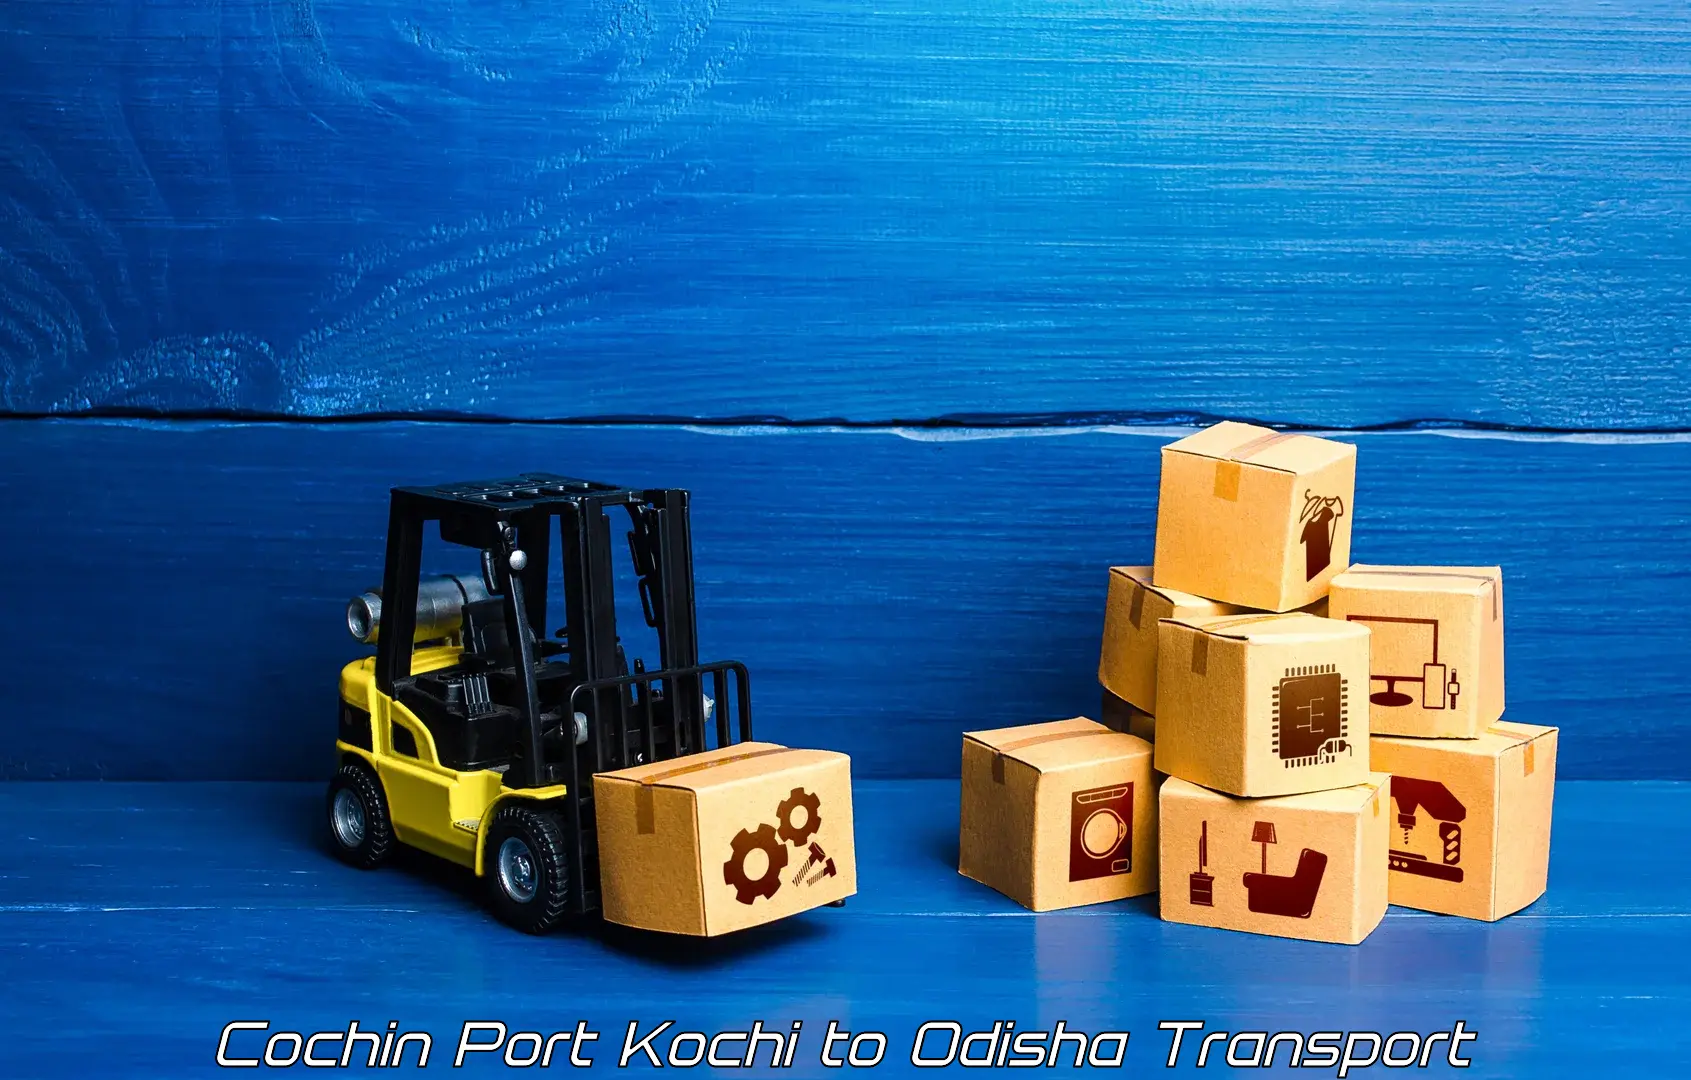 International cargo transportation services Cochin Port Kochi to Patnagarh